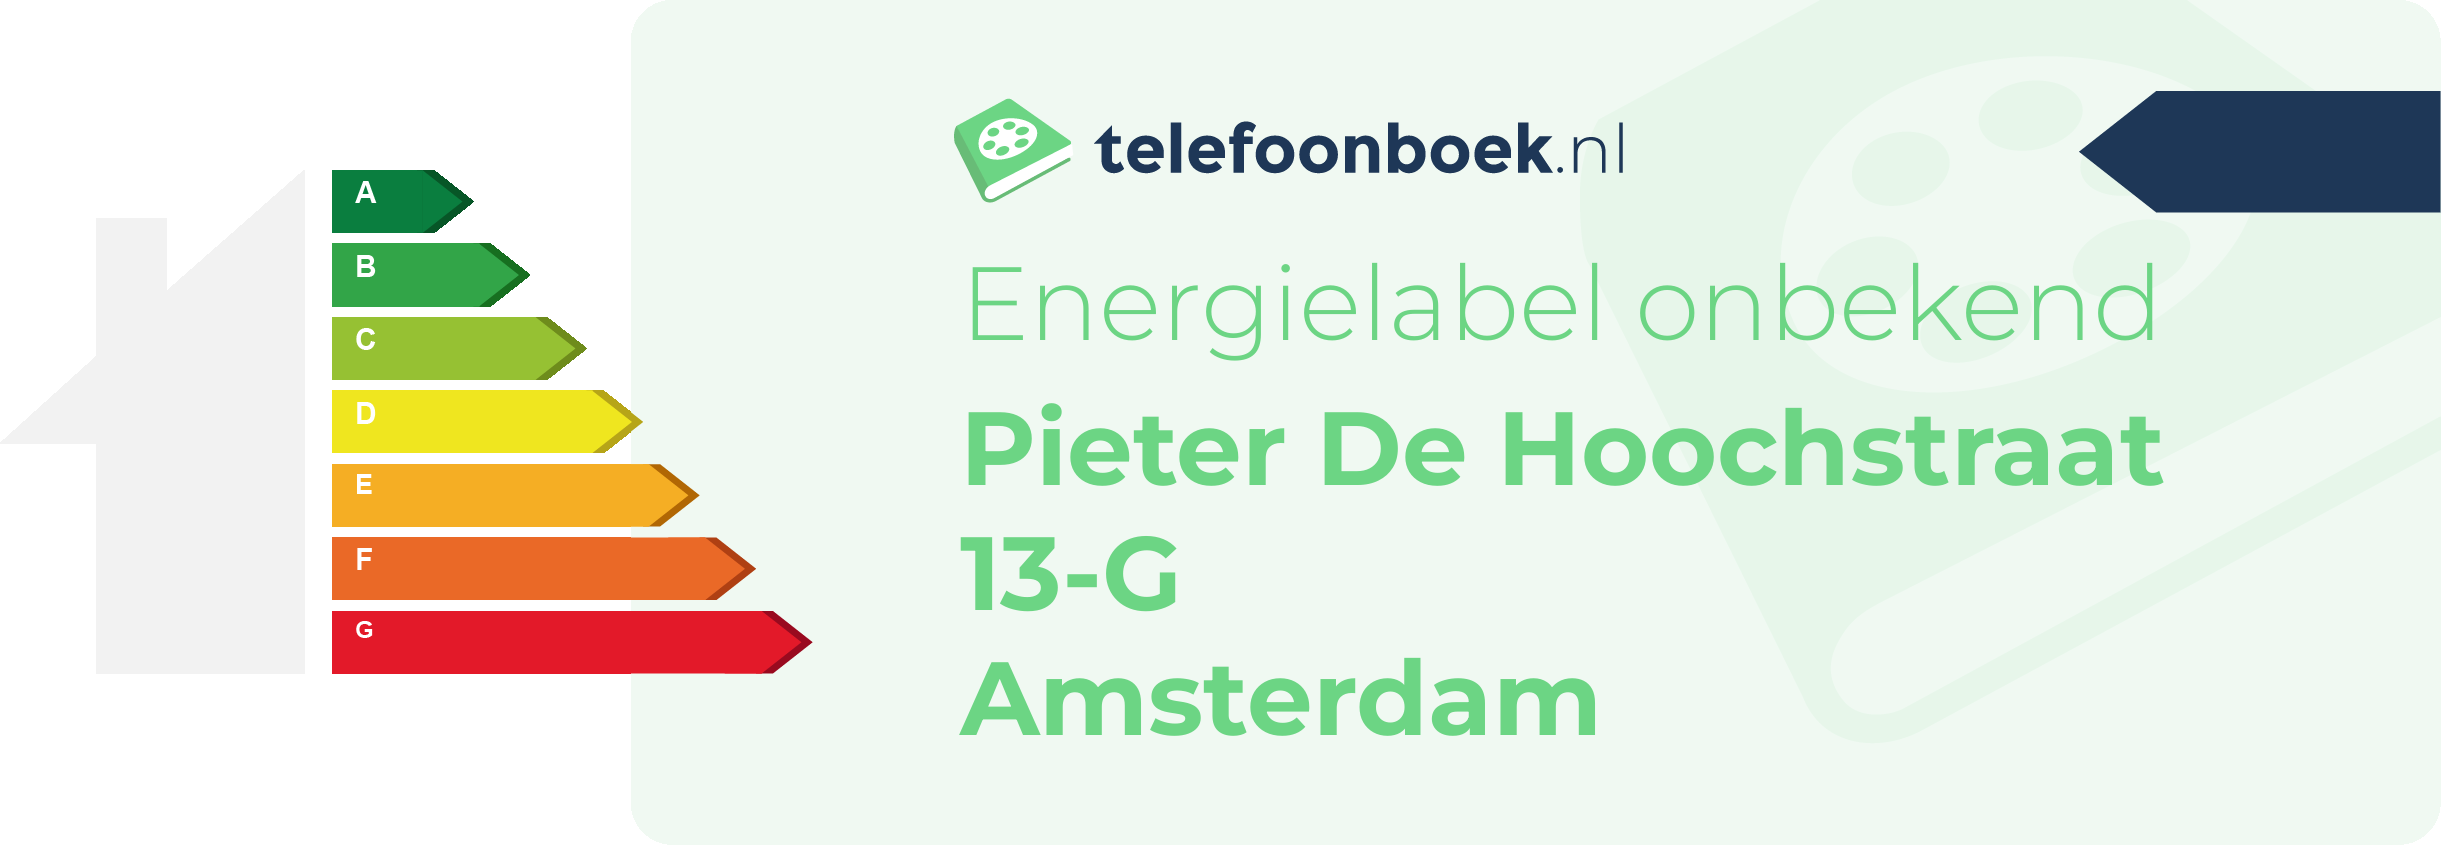 Energielabel Pieter De Hoochstraat 13-G Amsterdam